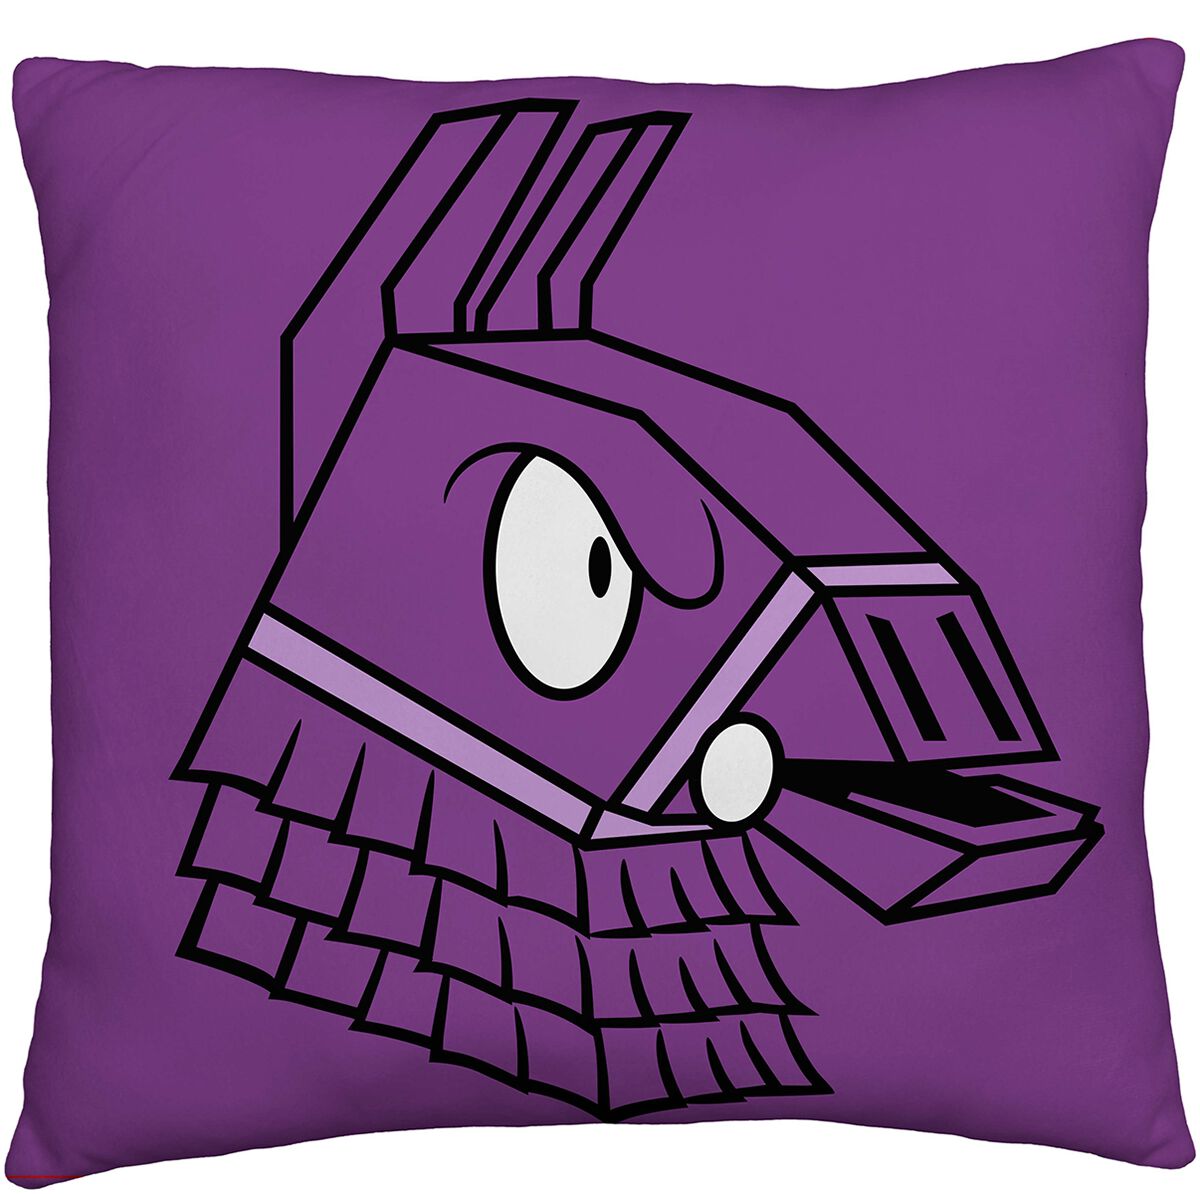 Fortnite Loot Llama Pillows lilac